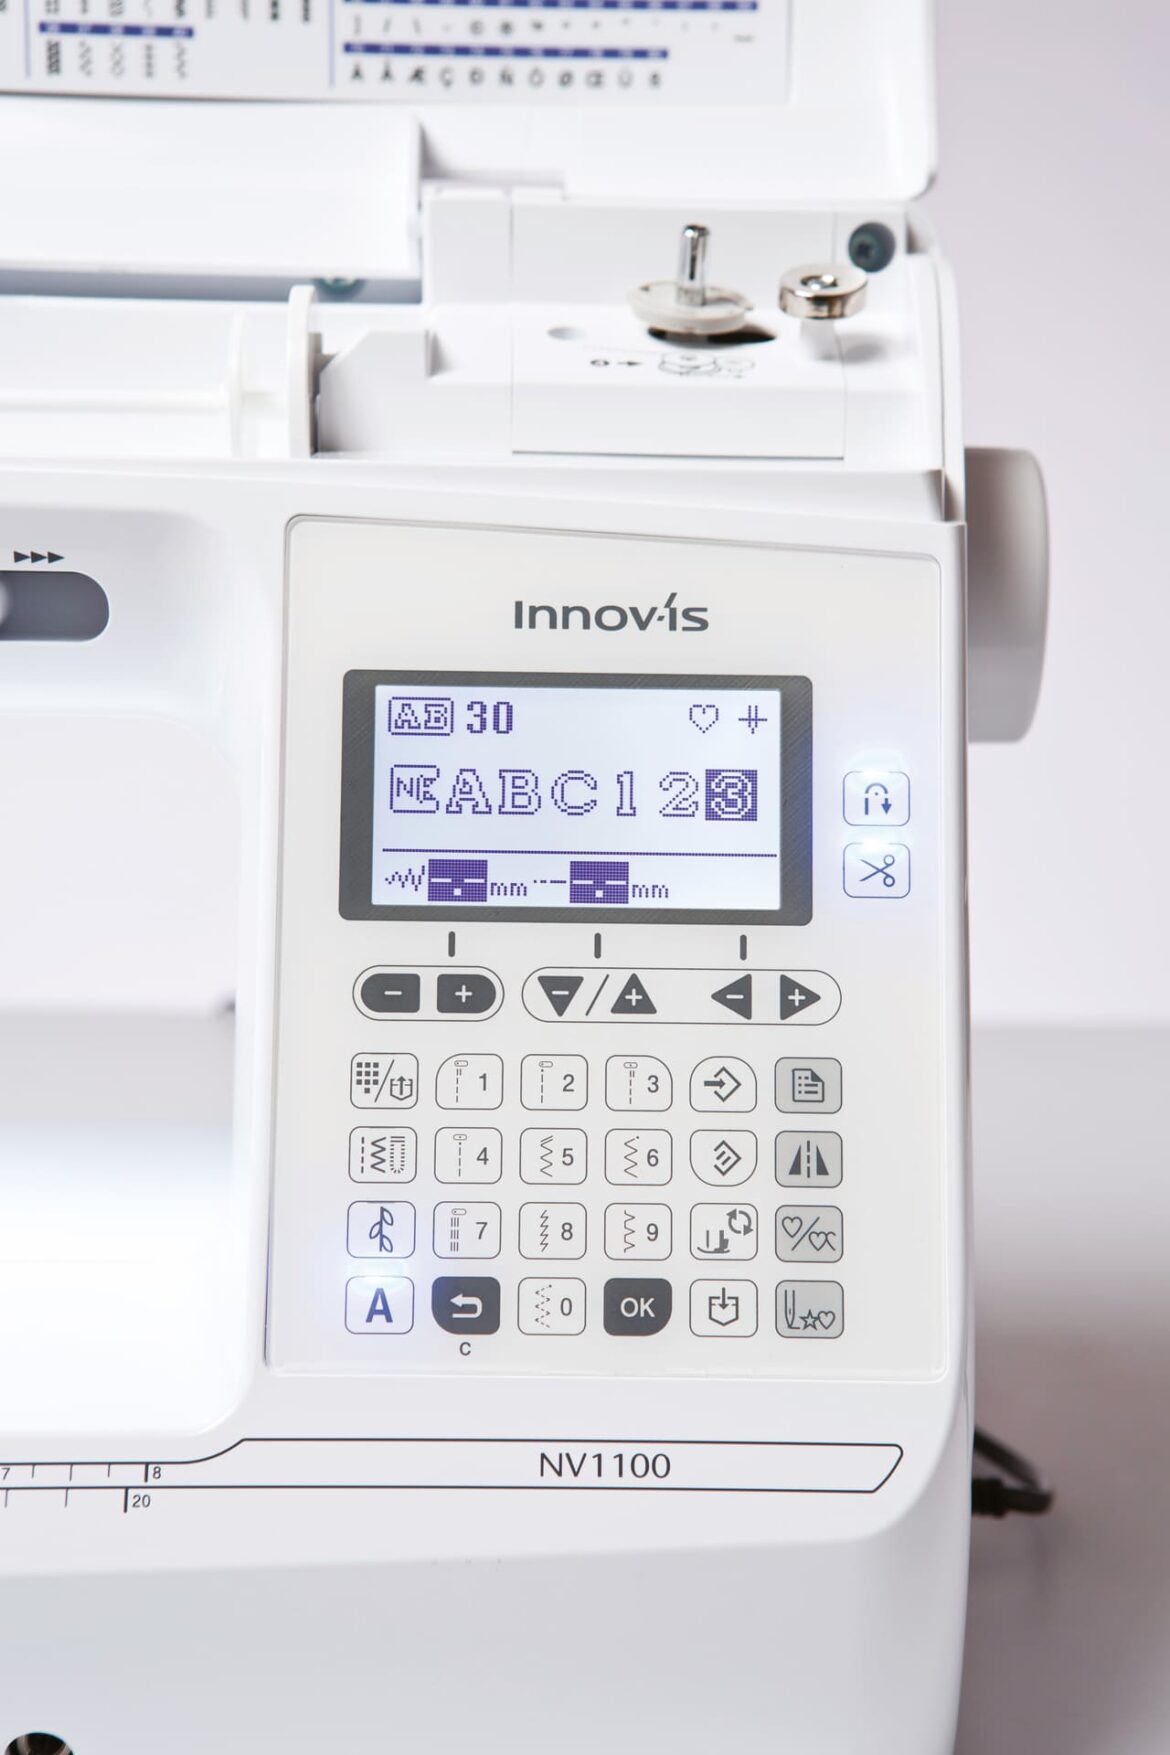 Innov-is NV1100